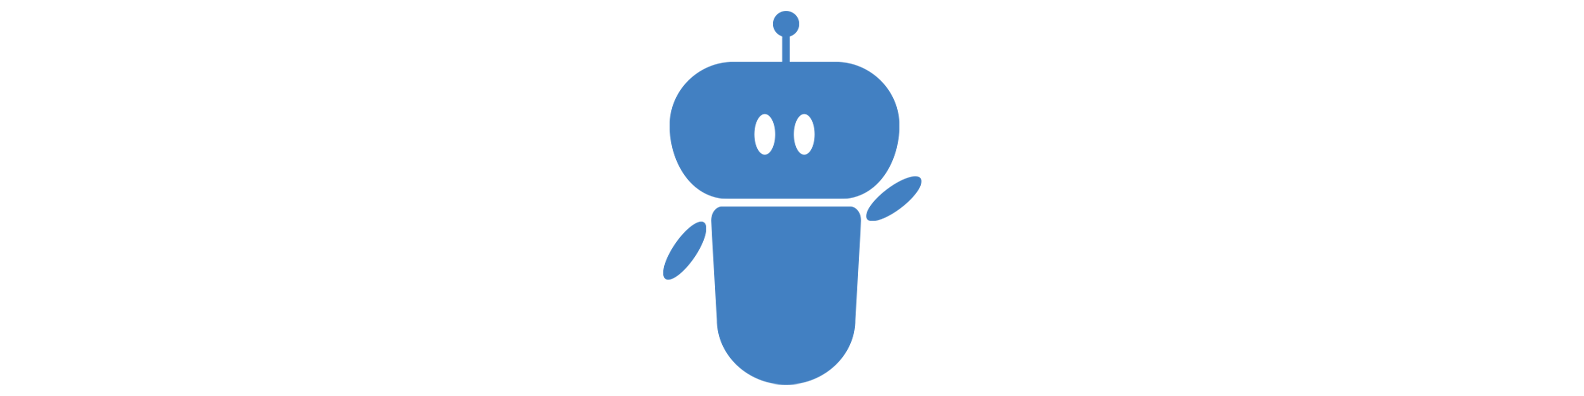 mascot vshnbot animated wide blue